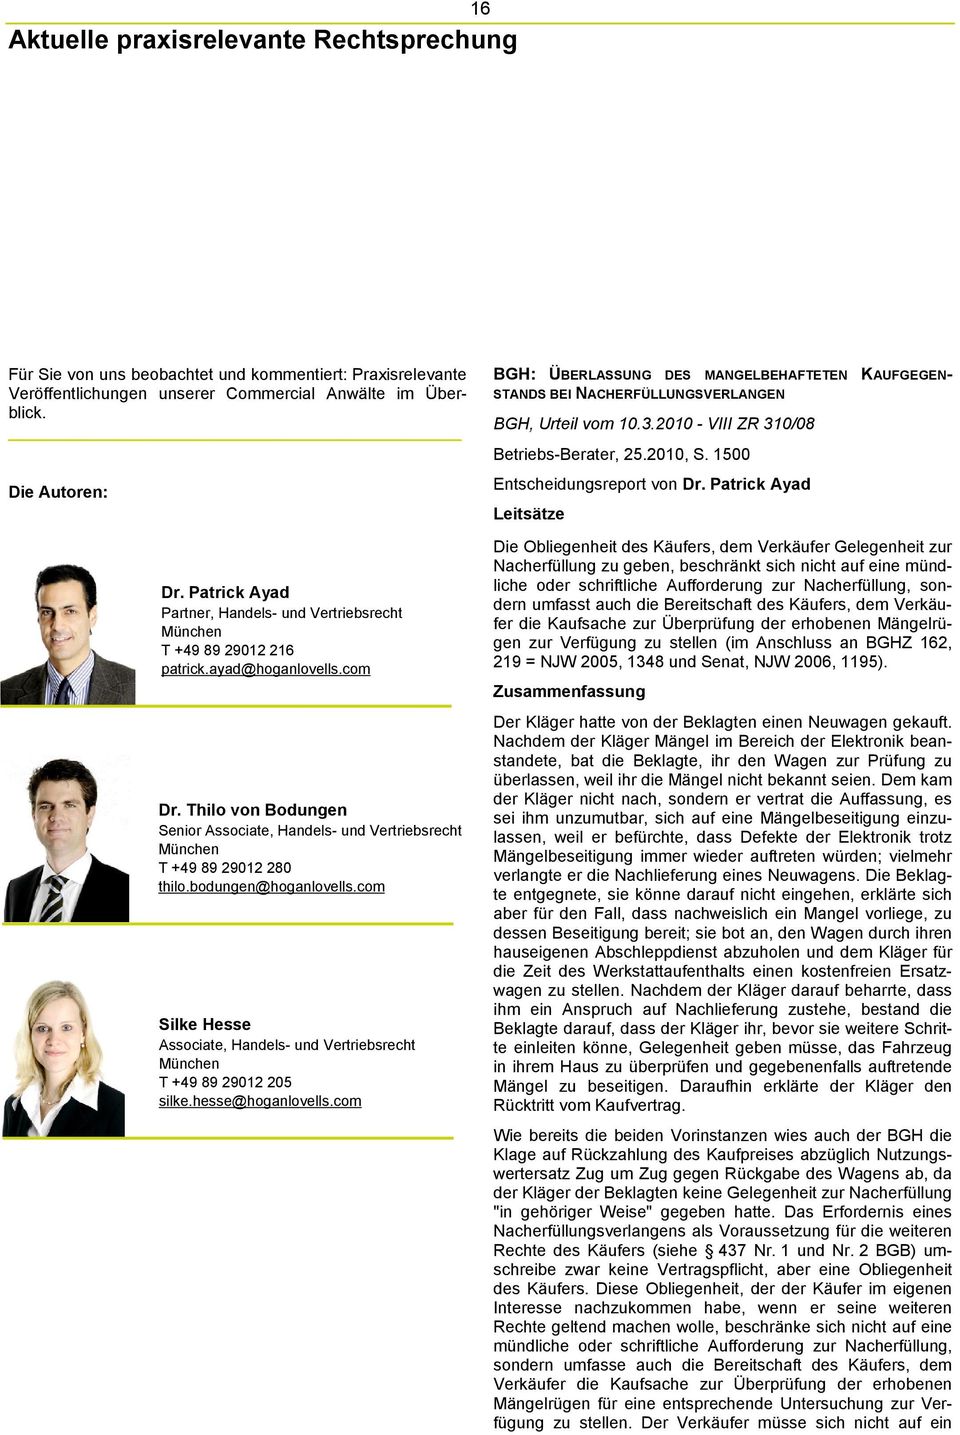 Thilo von Bodungen Senior Associate, Handels- und Vertriebsrecht München T +49 89 29012 280 thilo.bodungen@hoganlovells.